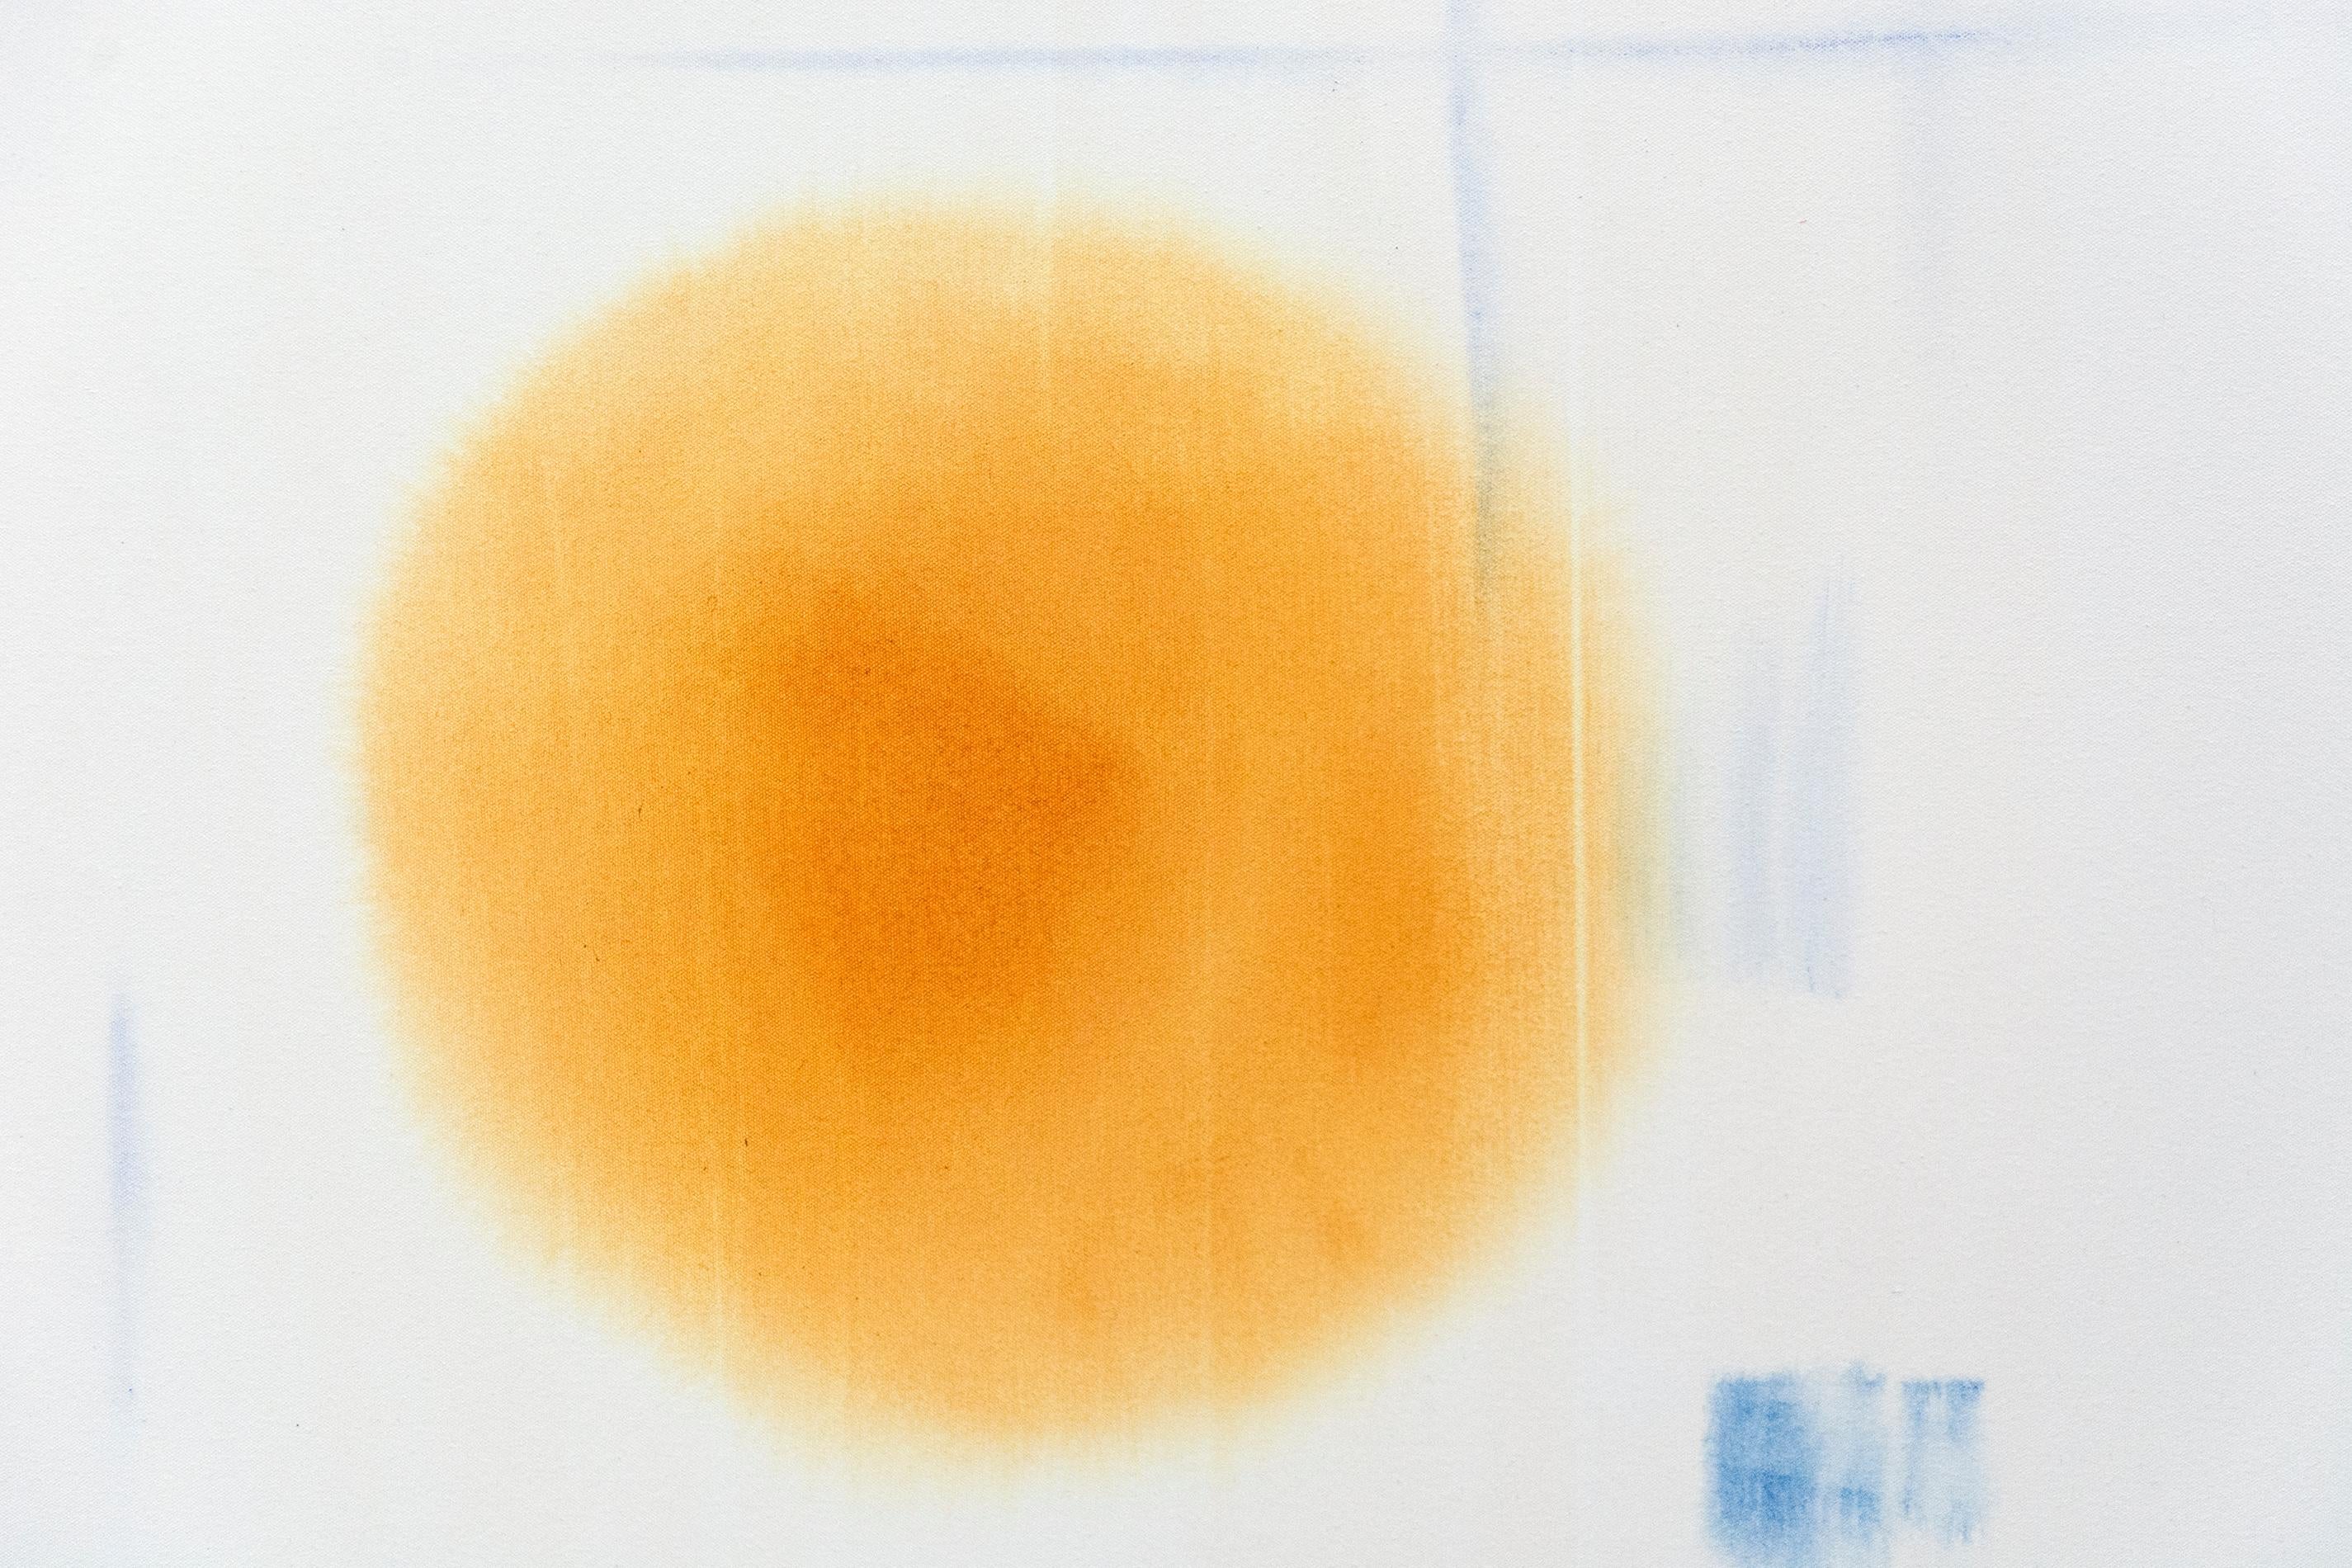 Natürlicher Rhythmus - groß, cremefarben, blau, orange, lyrisch abstrakt, Acryl auf Leinwand (Grau), Abstract Painting, von Milly Ristvedt